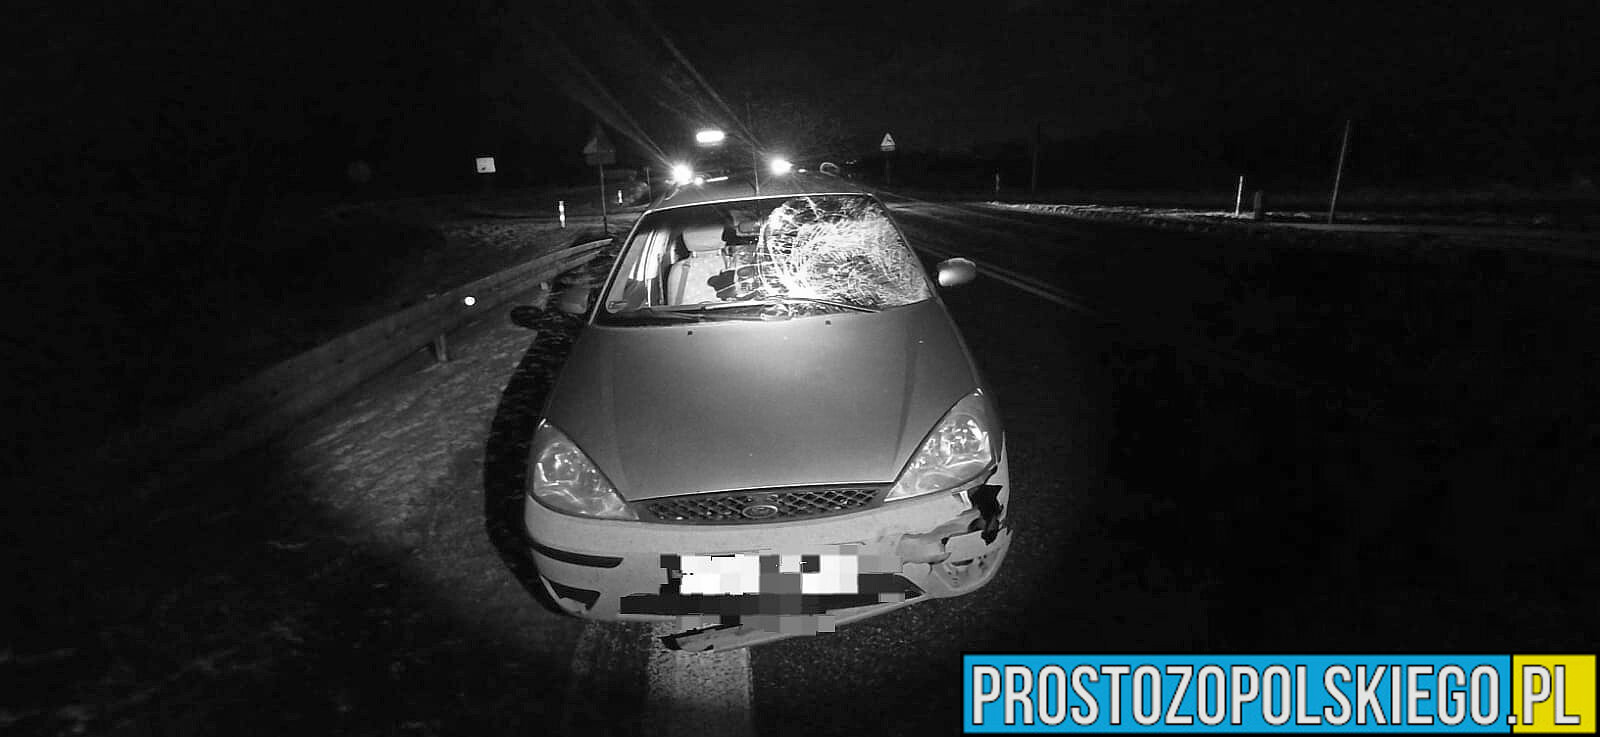 Dwa wypadki na DK 39 w okolicy Łukowic Brzeskich. Śmiertelne potrącenie mężczyzny i zderzenie dwóch samochodów.